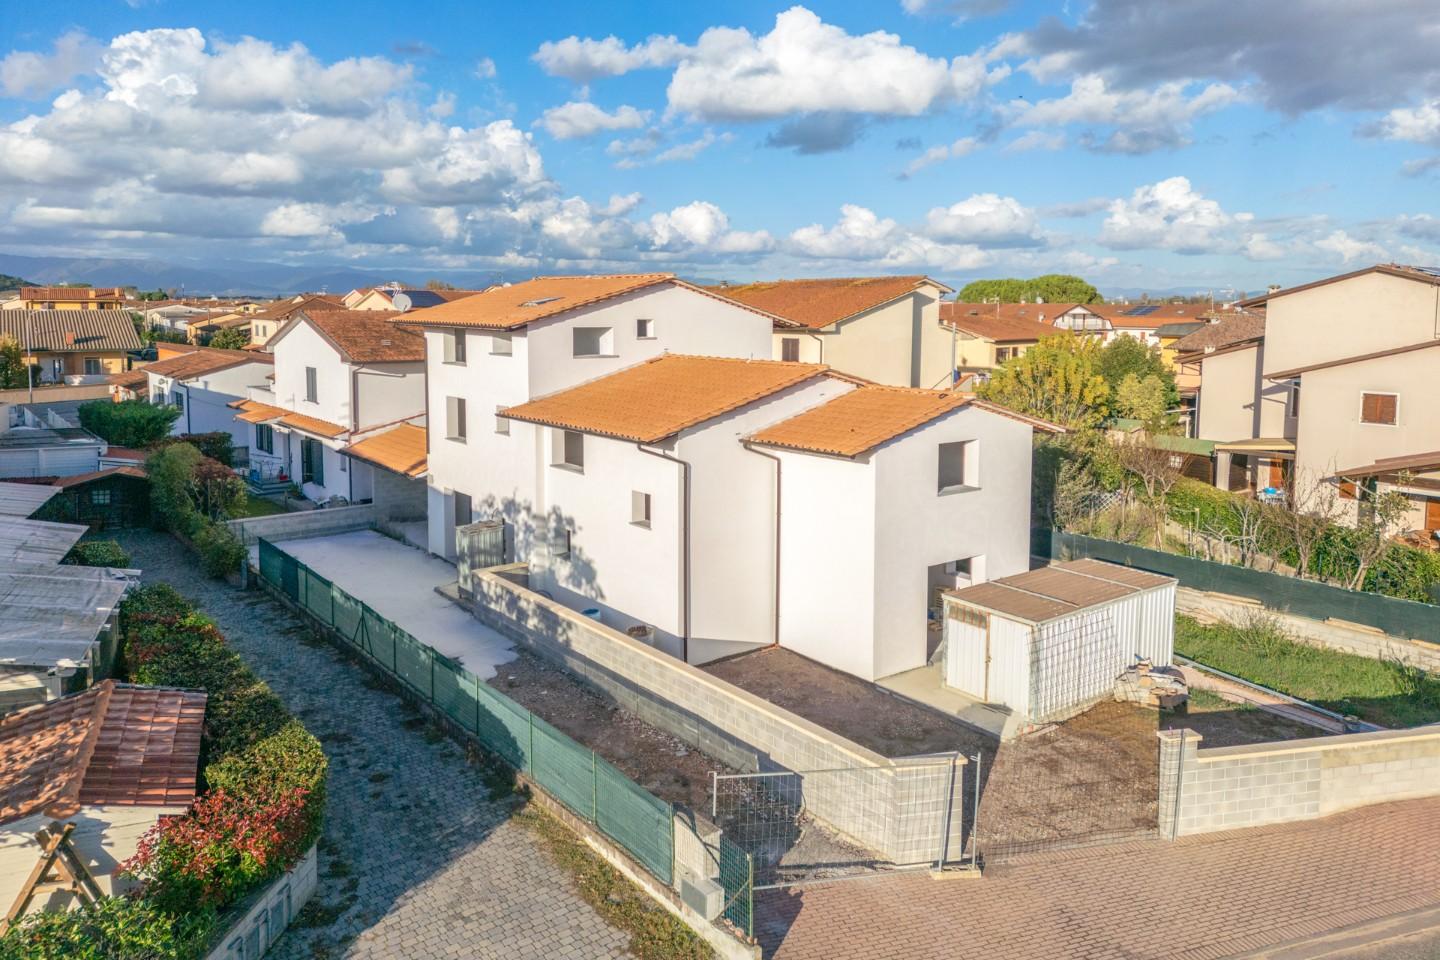 Villa Bifamiliare in vendita a Bientina, 6 locali, prezzo € 400.000 | PortaleAgenzieImmobiliari.it